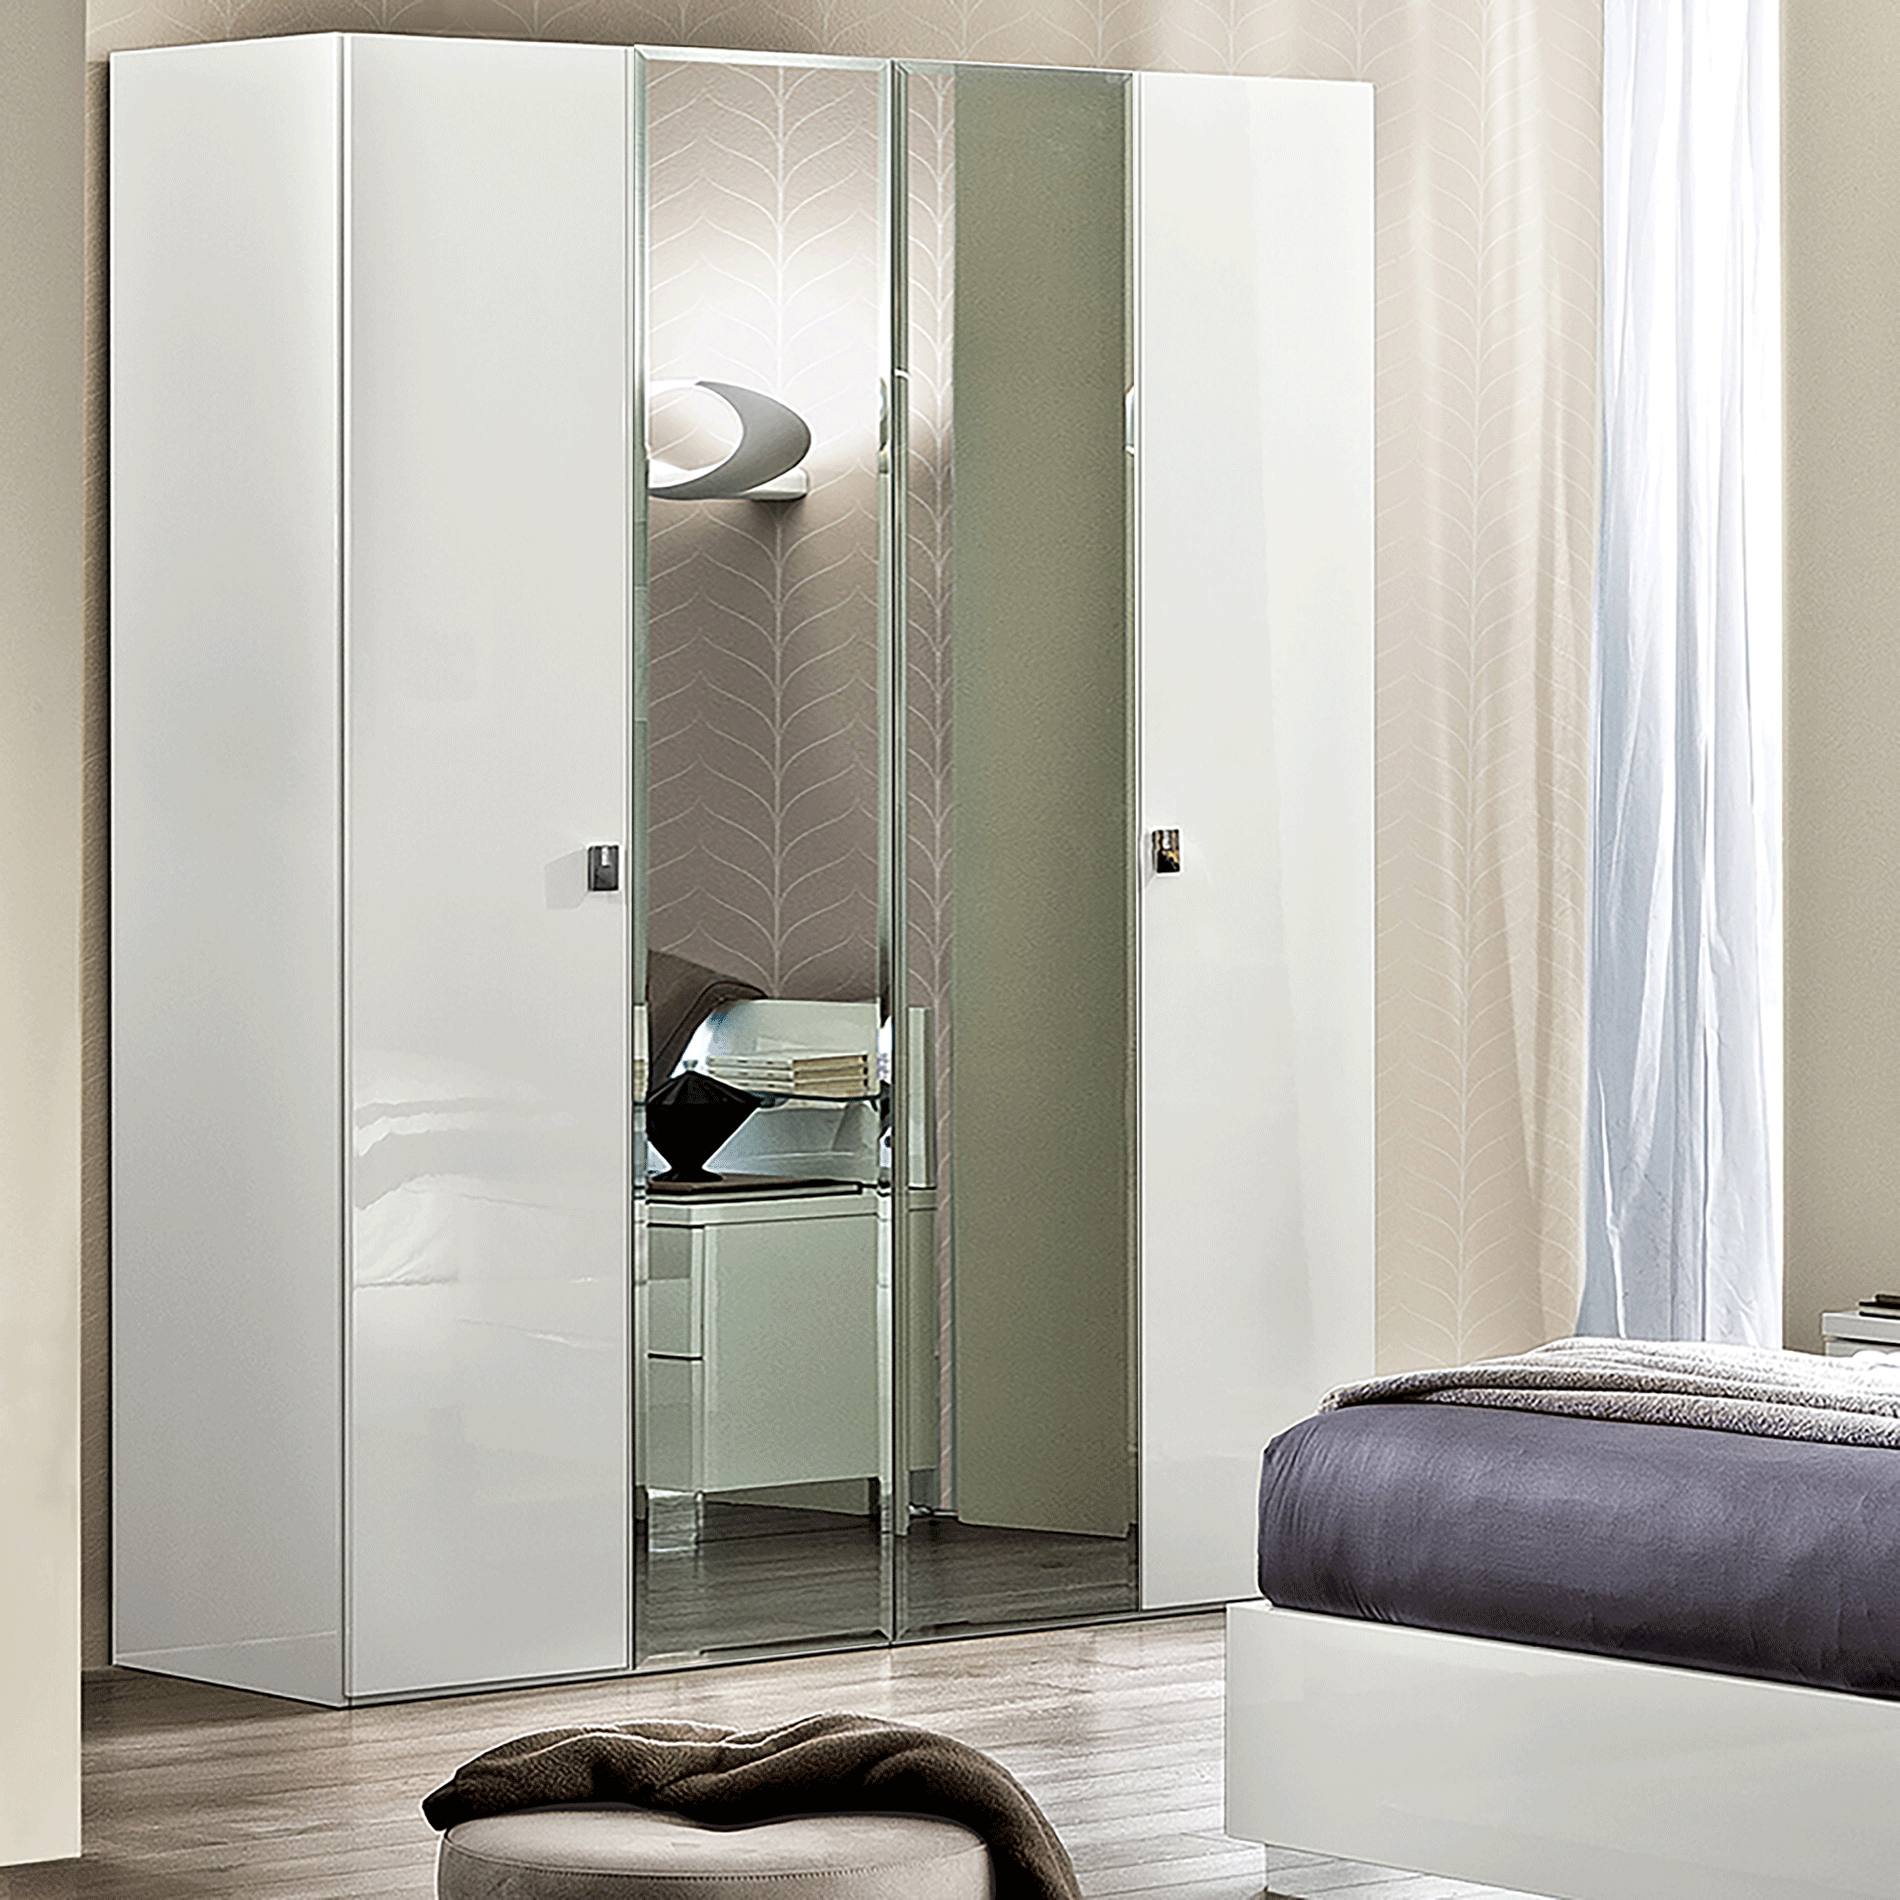 Brands Gamamobel Bedroom Sets, Spain Onda 4 Door Wardrobe White